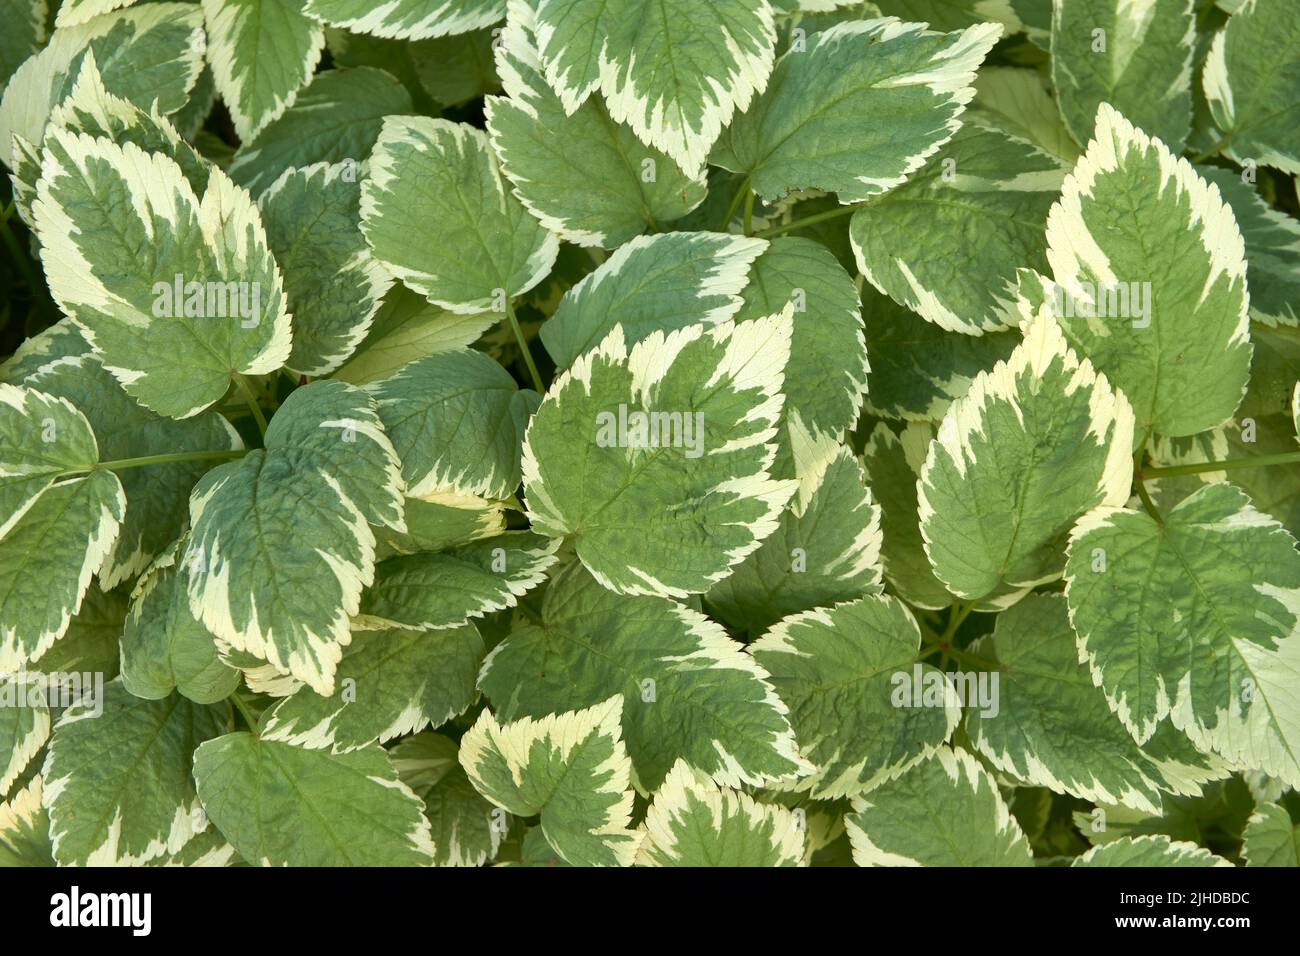 Primer plano de las hojas de una planta Hosta verde y blanca que forma un diseño abstracto Foto de stock